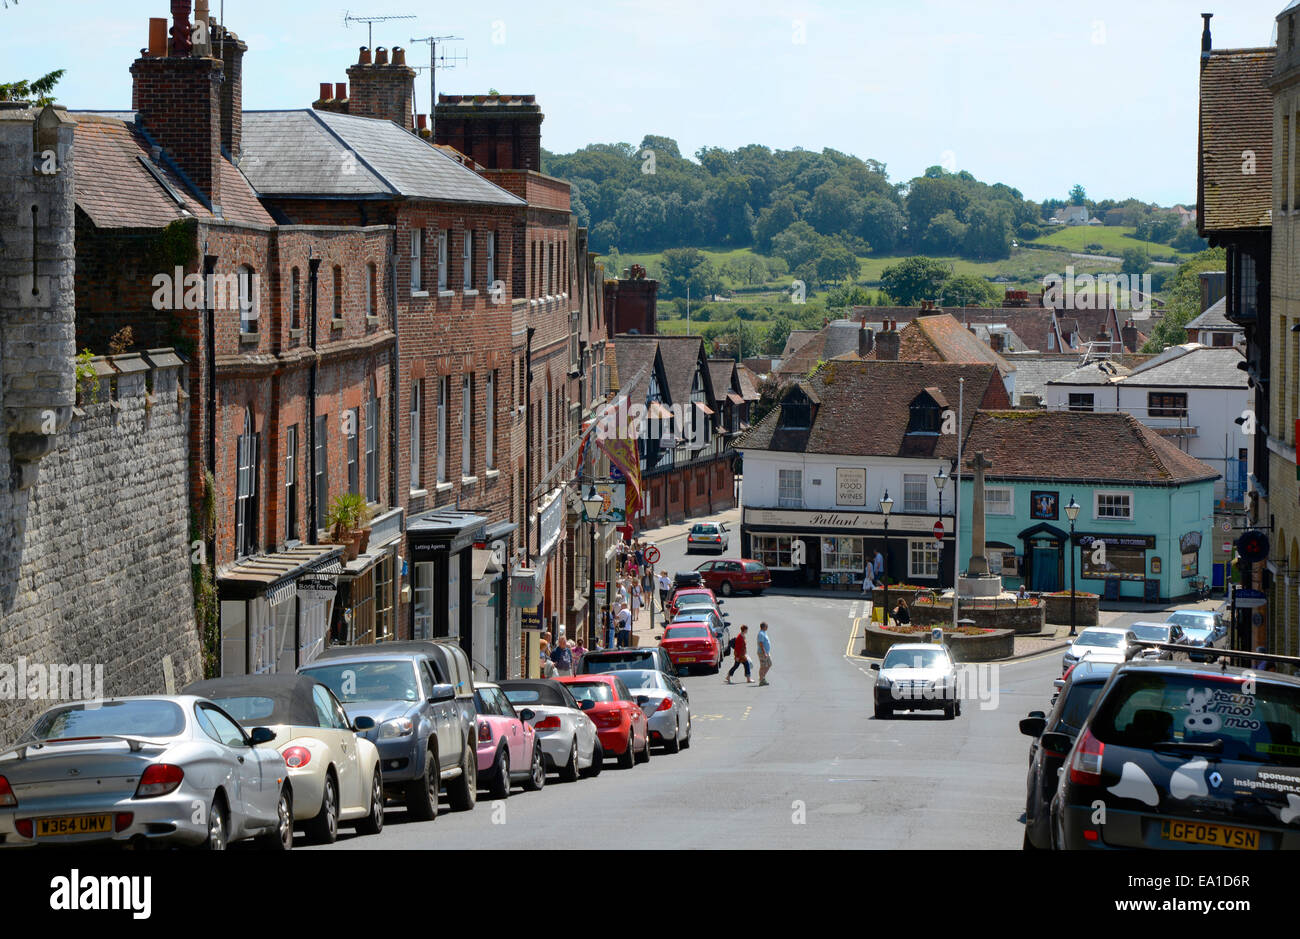 Zeigen Sie auf der hohen Straße in Arundel in West Sussex, England an. Mit geparkten Fahrzeugen und Menschen herumlaufen. Stockfoto